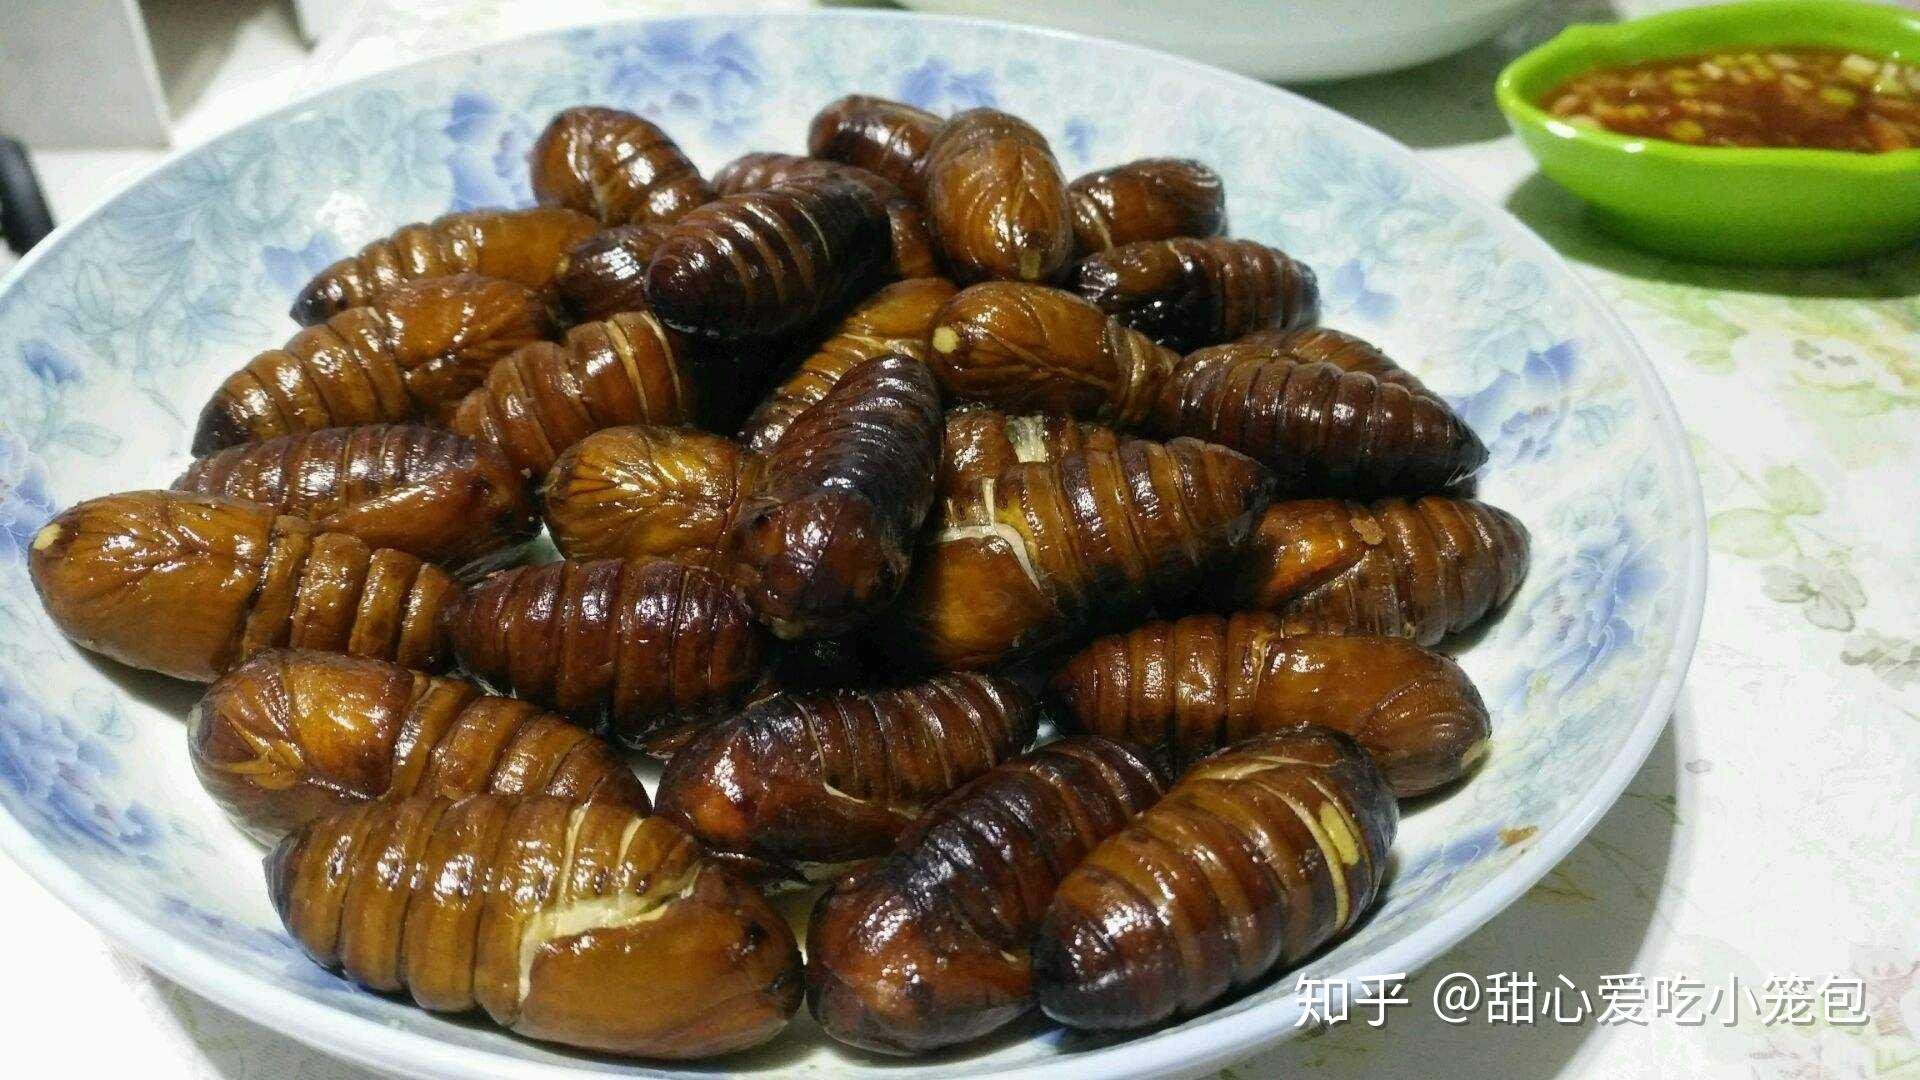 中国公认可以吃的8种虫子，有人拿它当饭吃，能咽下三种就是大神 - 哔哩哔哩